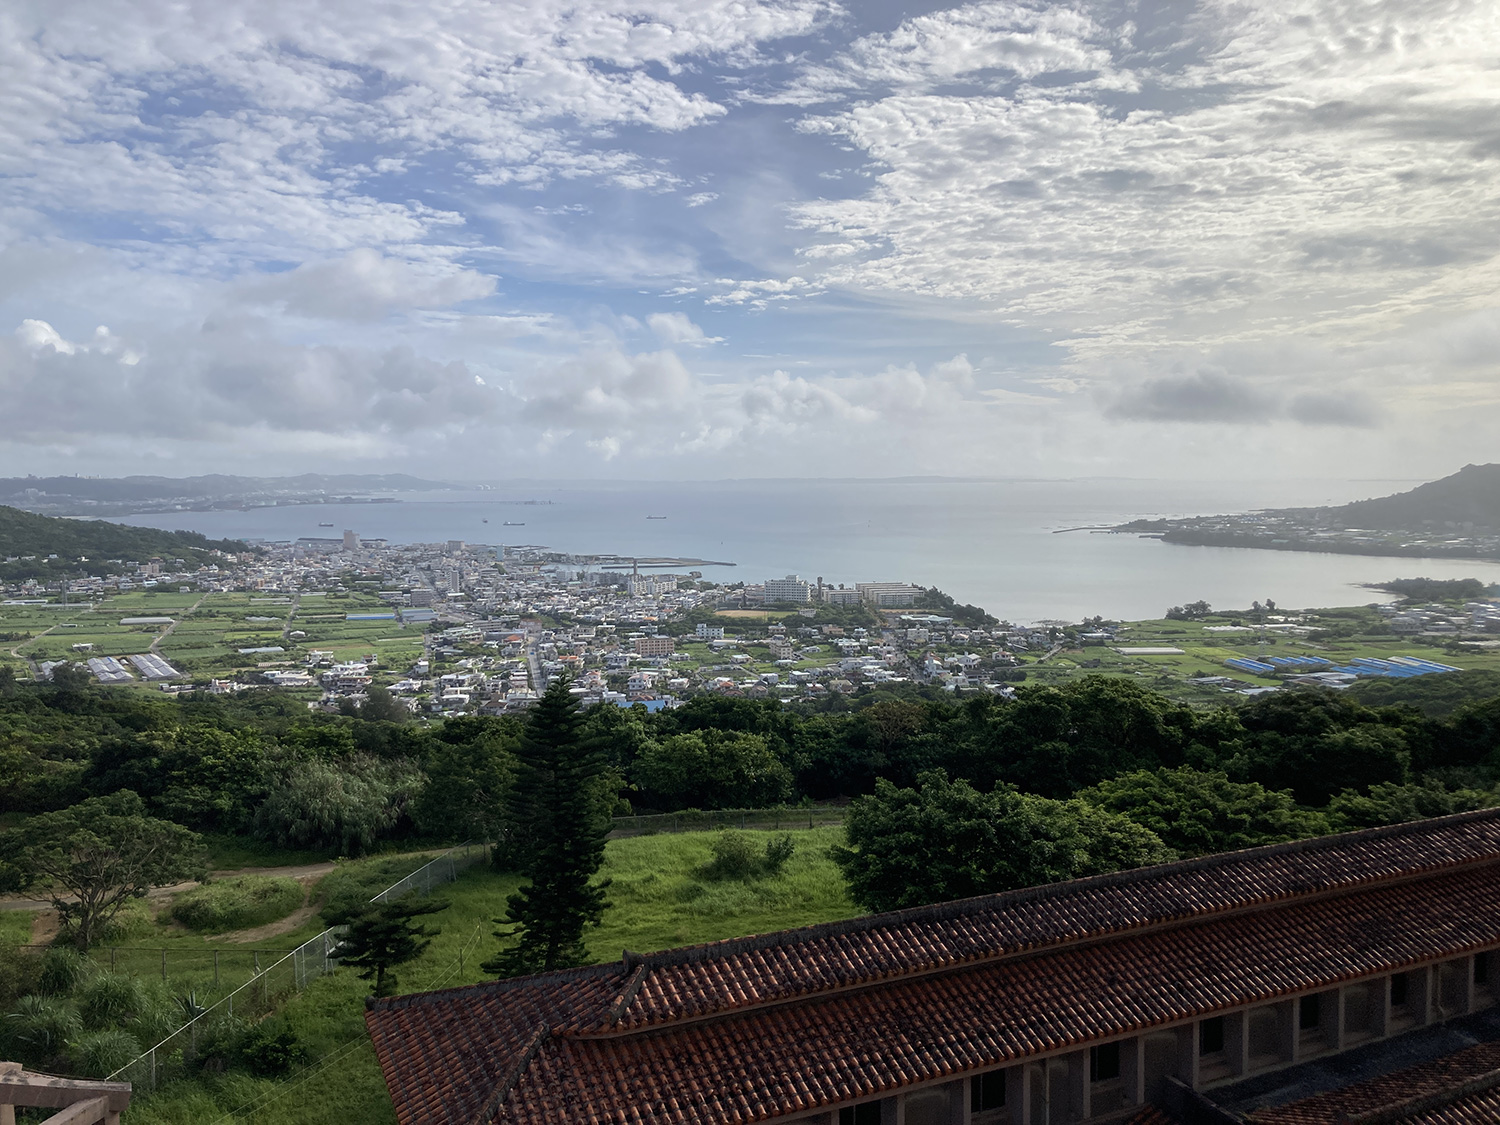 沖縄本島東海岸、朝の景色。<br>雲は若干ありながらも概ね晴れ模様。